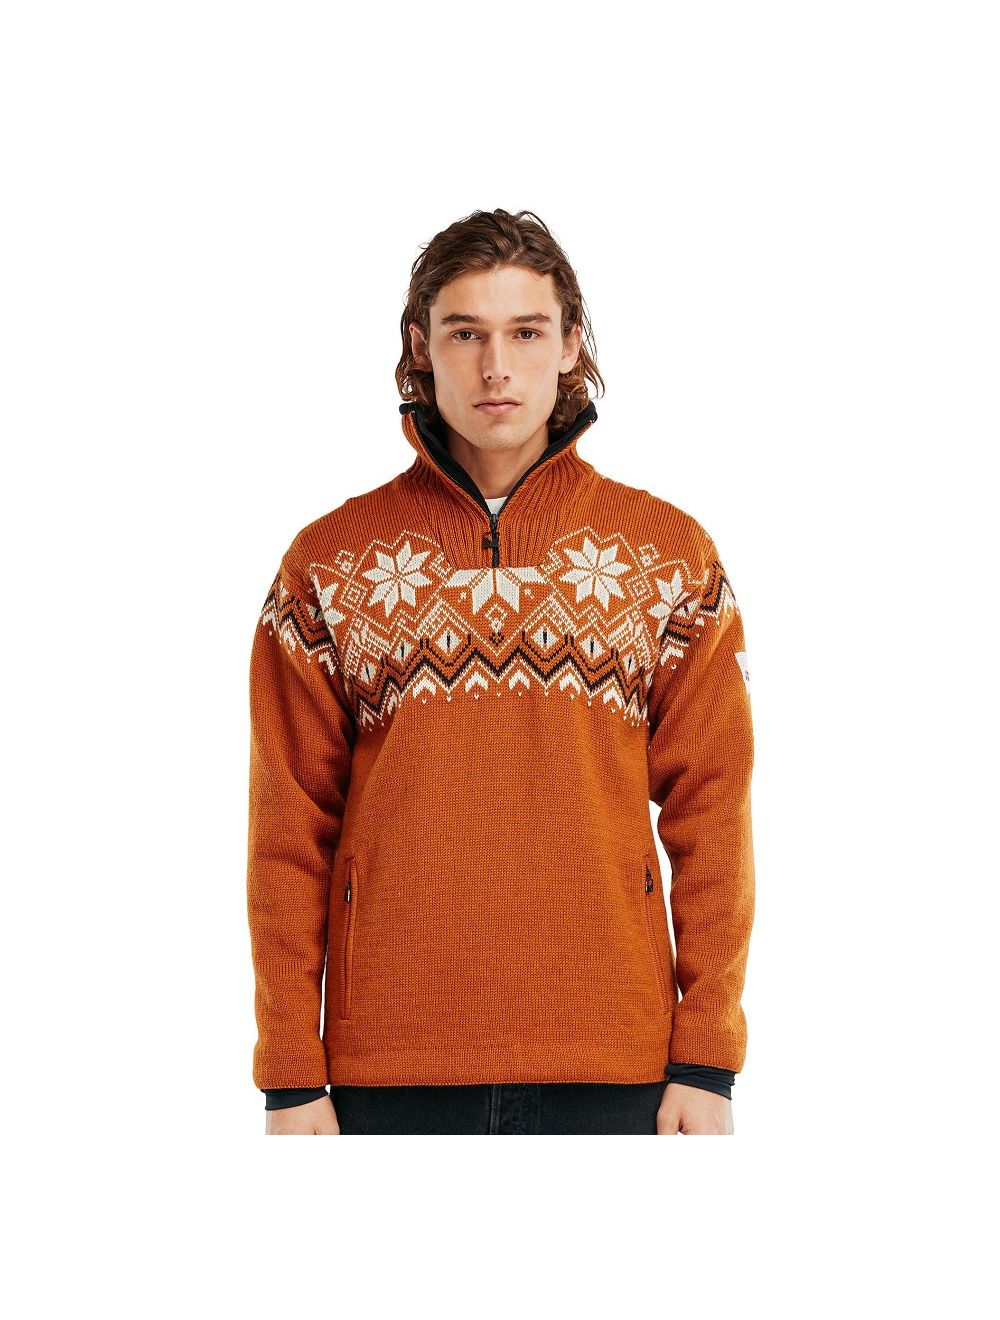 warm Vol Storing Dale of Norway Fongen WP Sweater Online Kopen - Ronald Adventure Shop